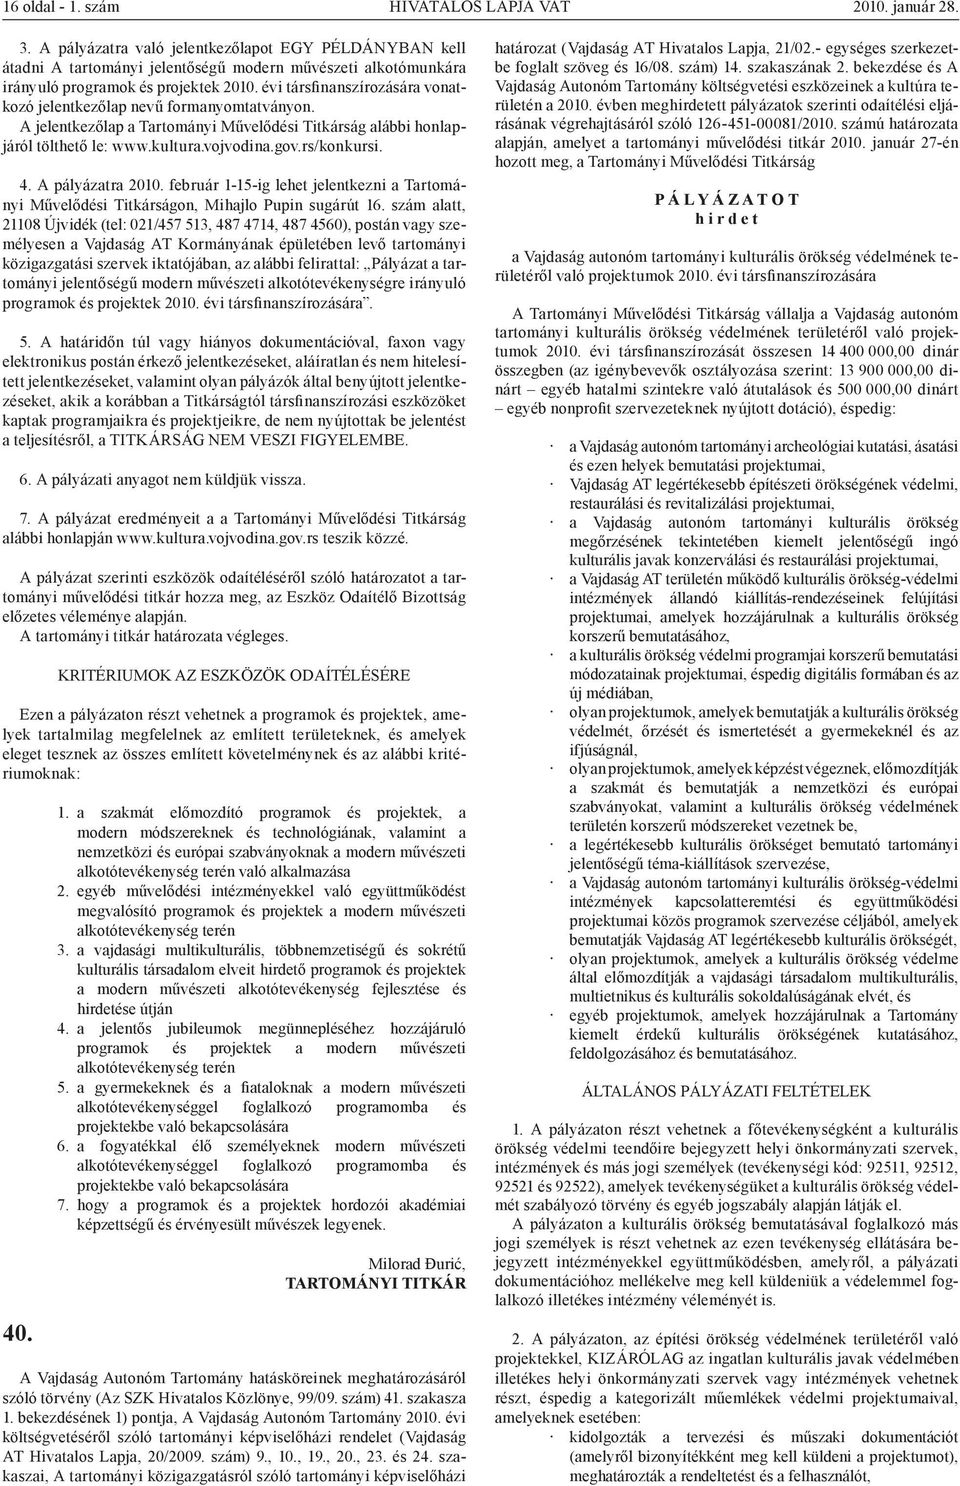 évi társfinanszírozására vonatkozó jelentkezőlap nevű formanyomtatványon. A jelentkezőlap a Tartományi Művelődési Titkárság alábbi honlapjáról tölthető le: www.kultura.vojvodina.gov.rs/konkursi. 4.